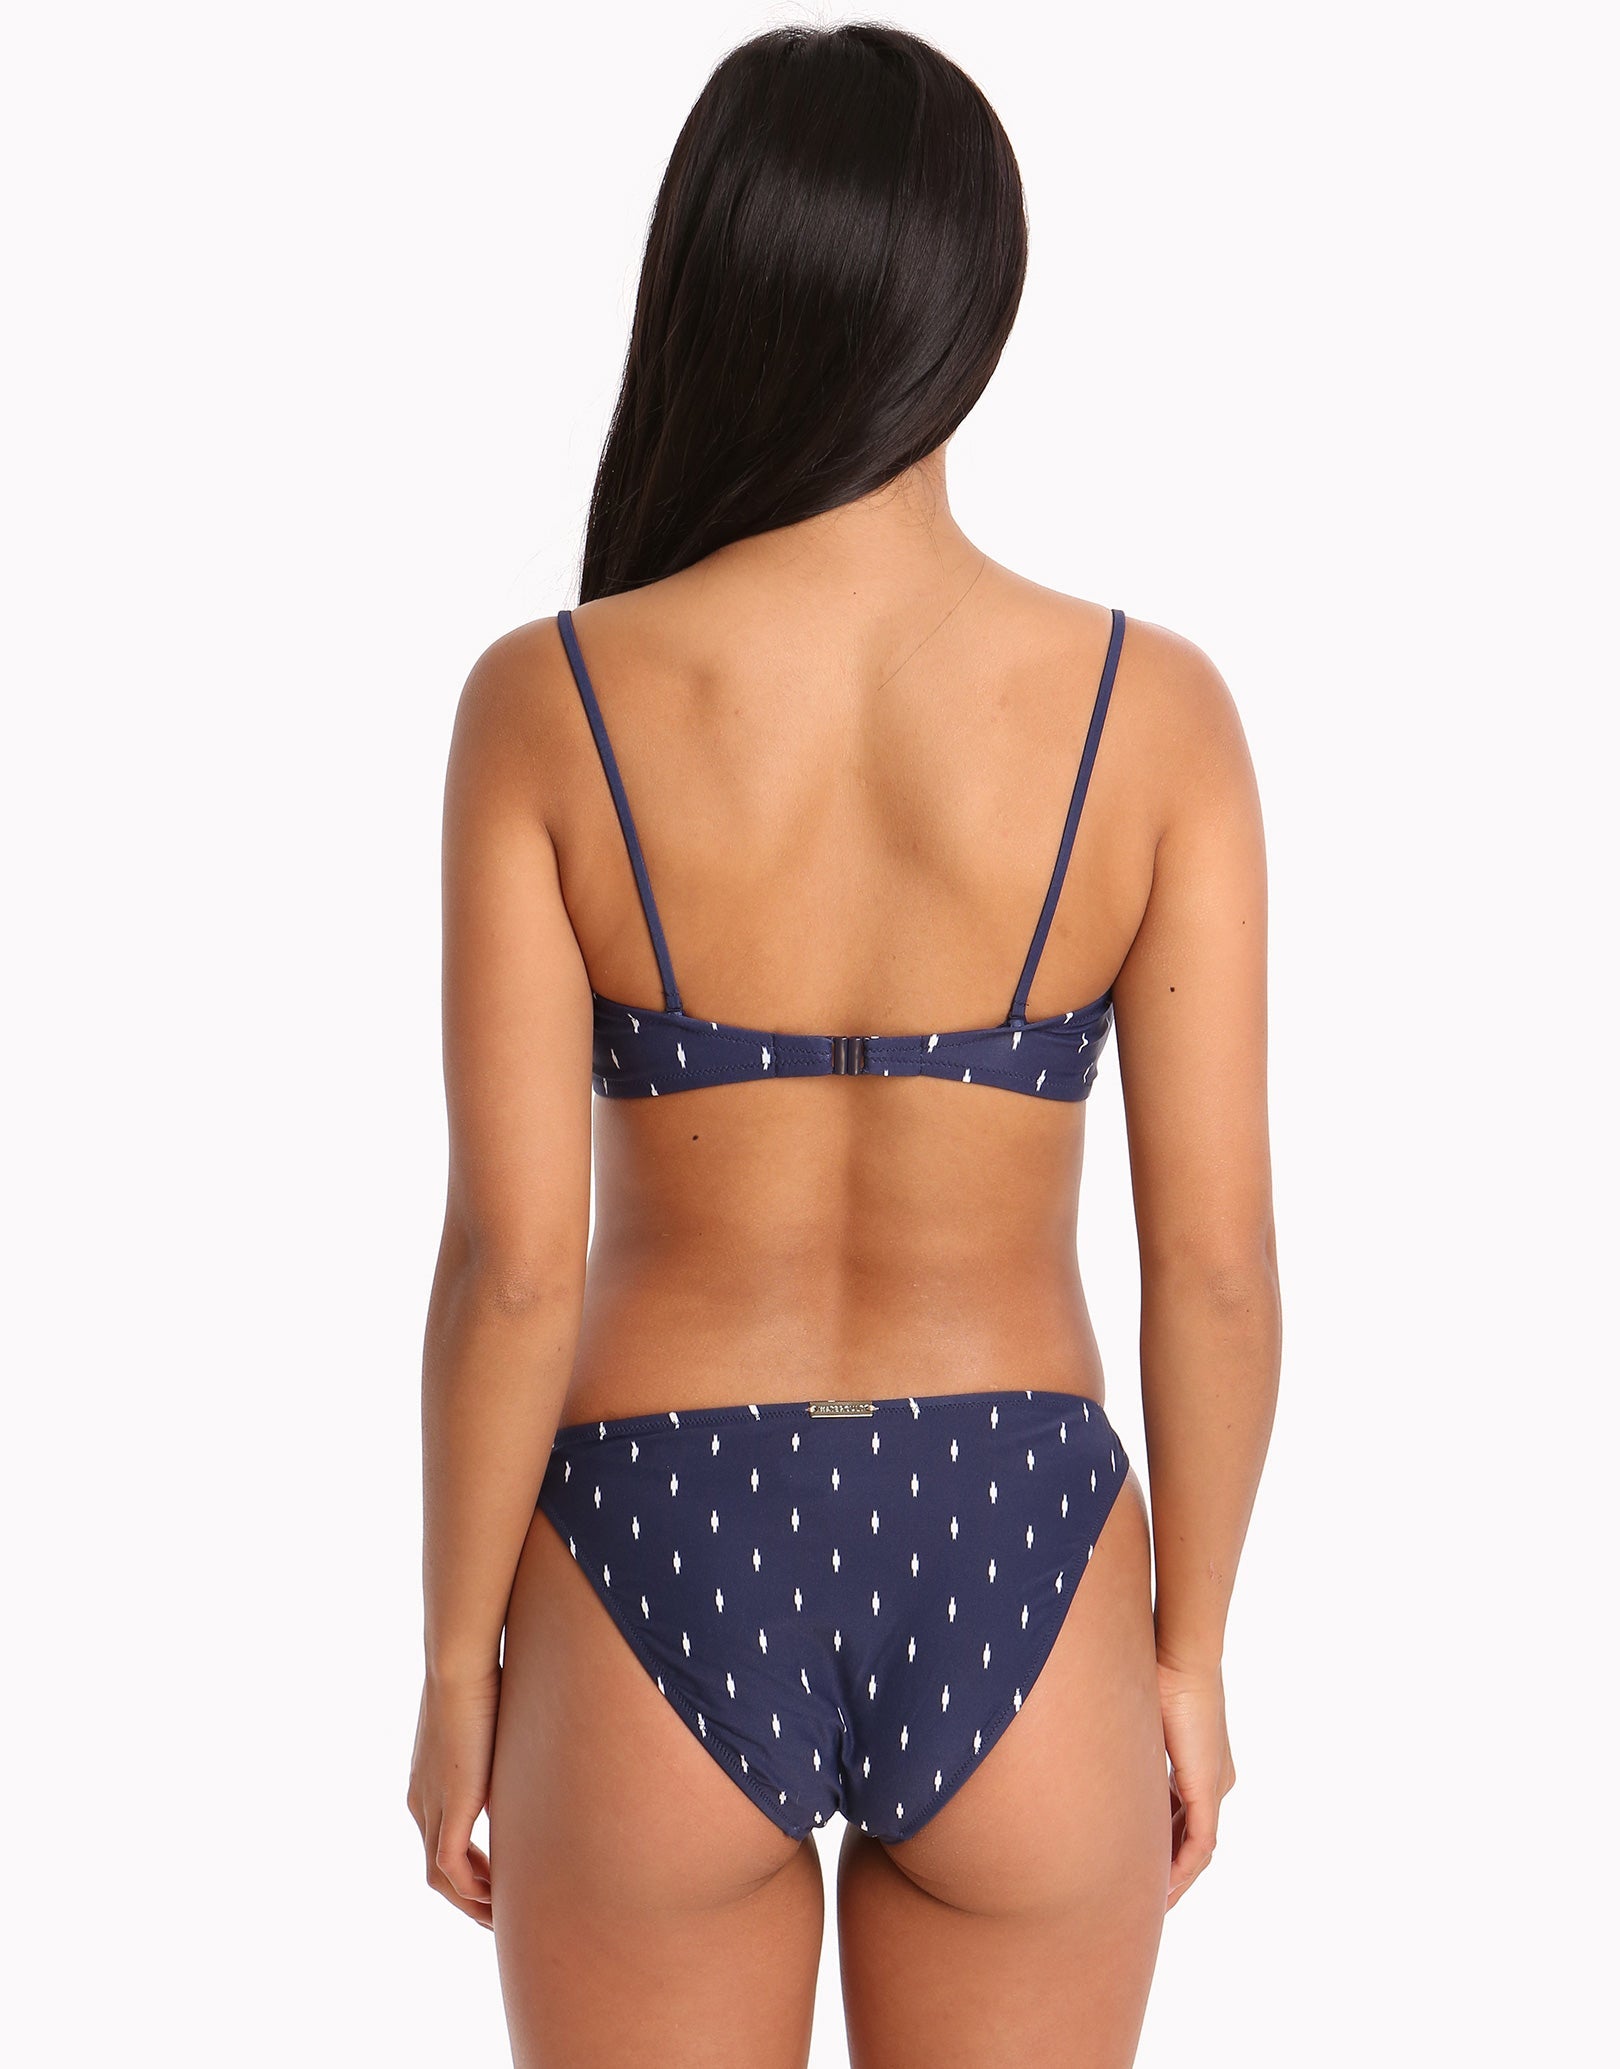 Watercult Artful Dot Bikini Bottom - Indigo